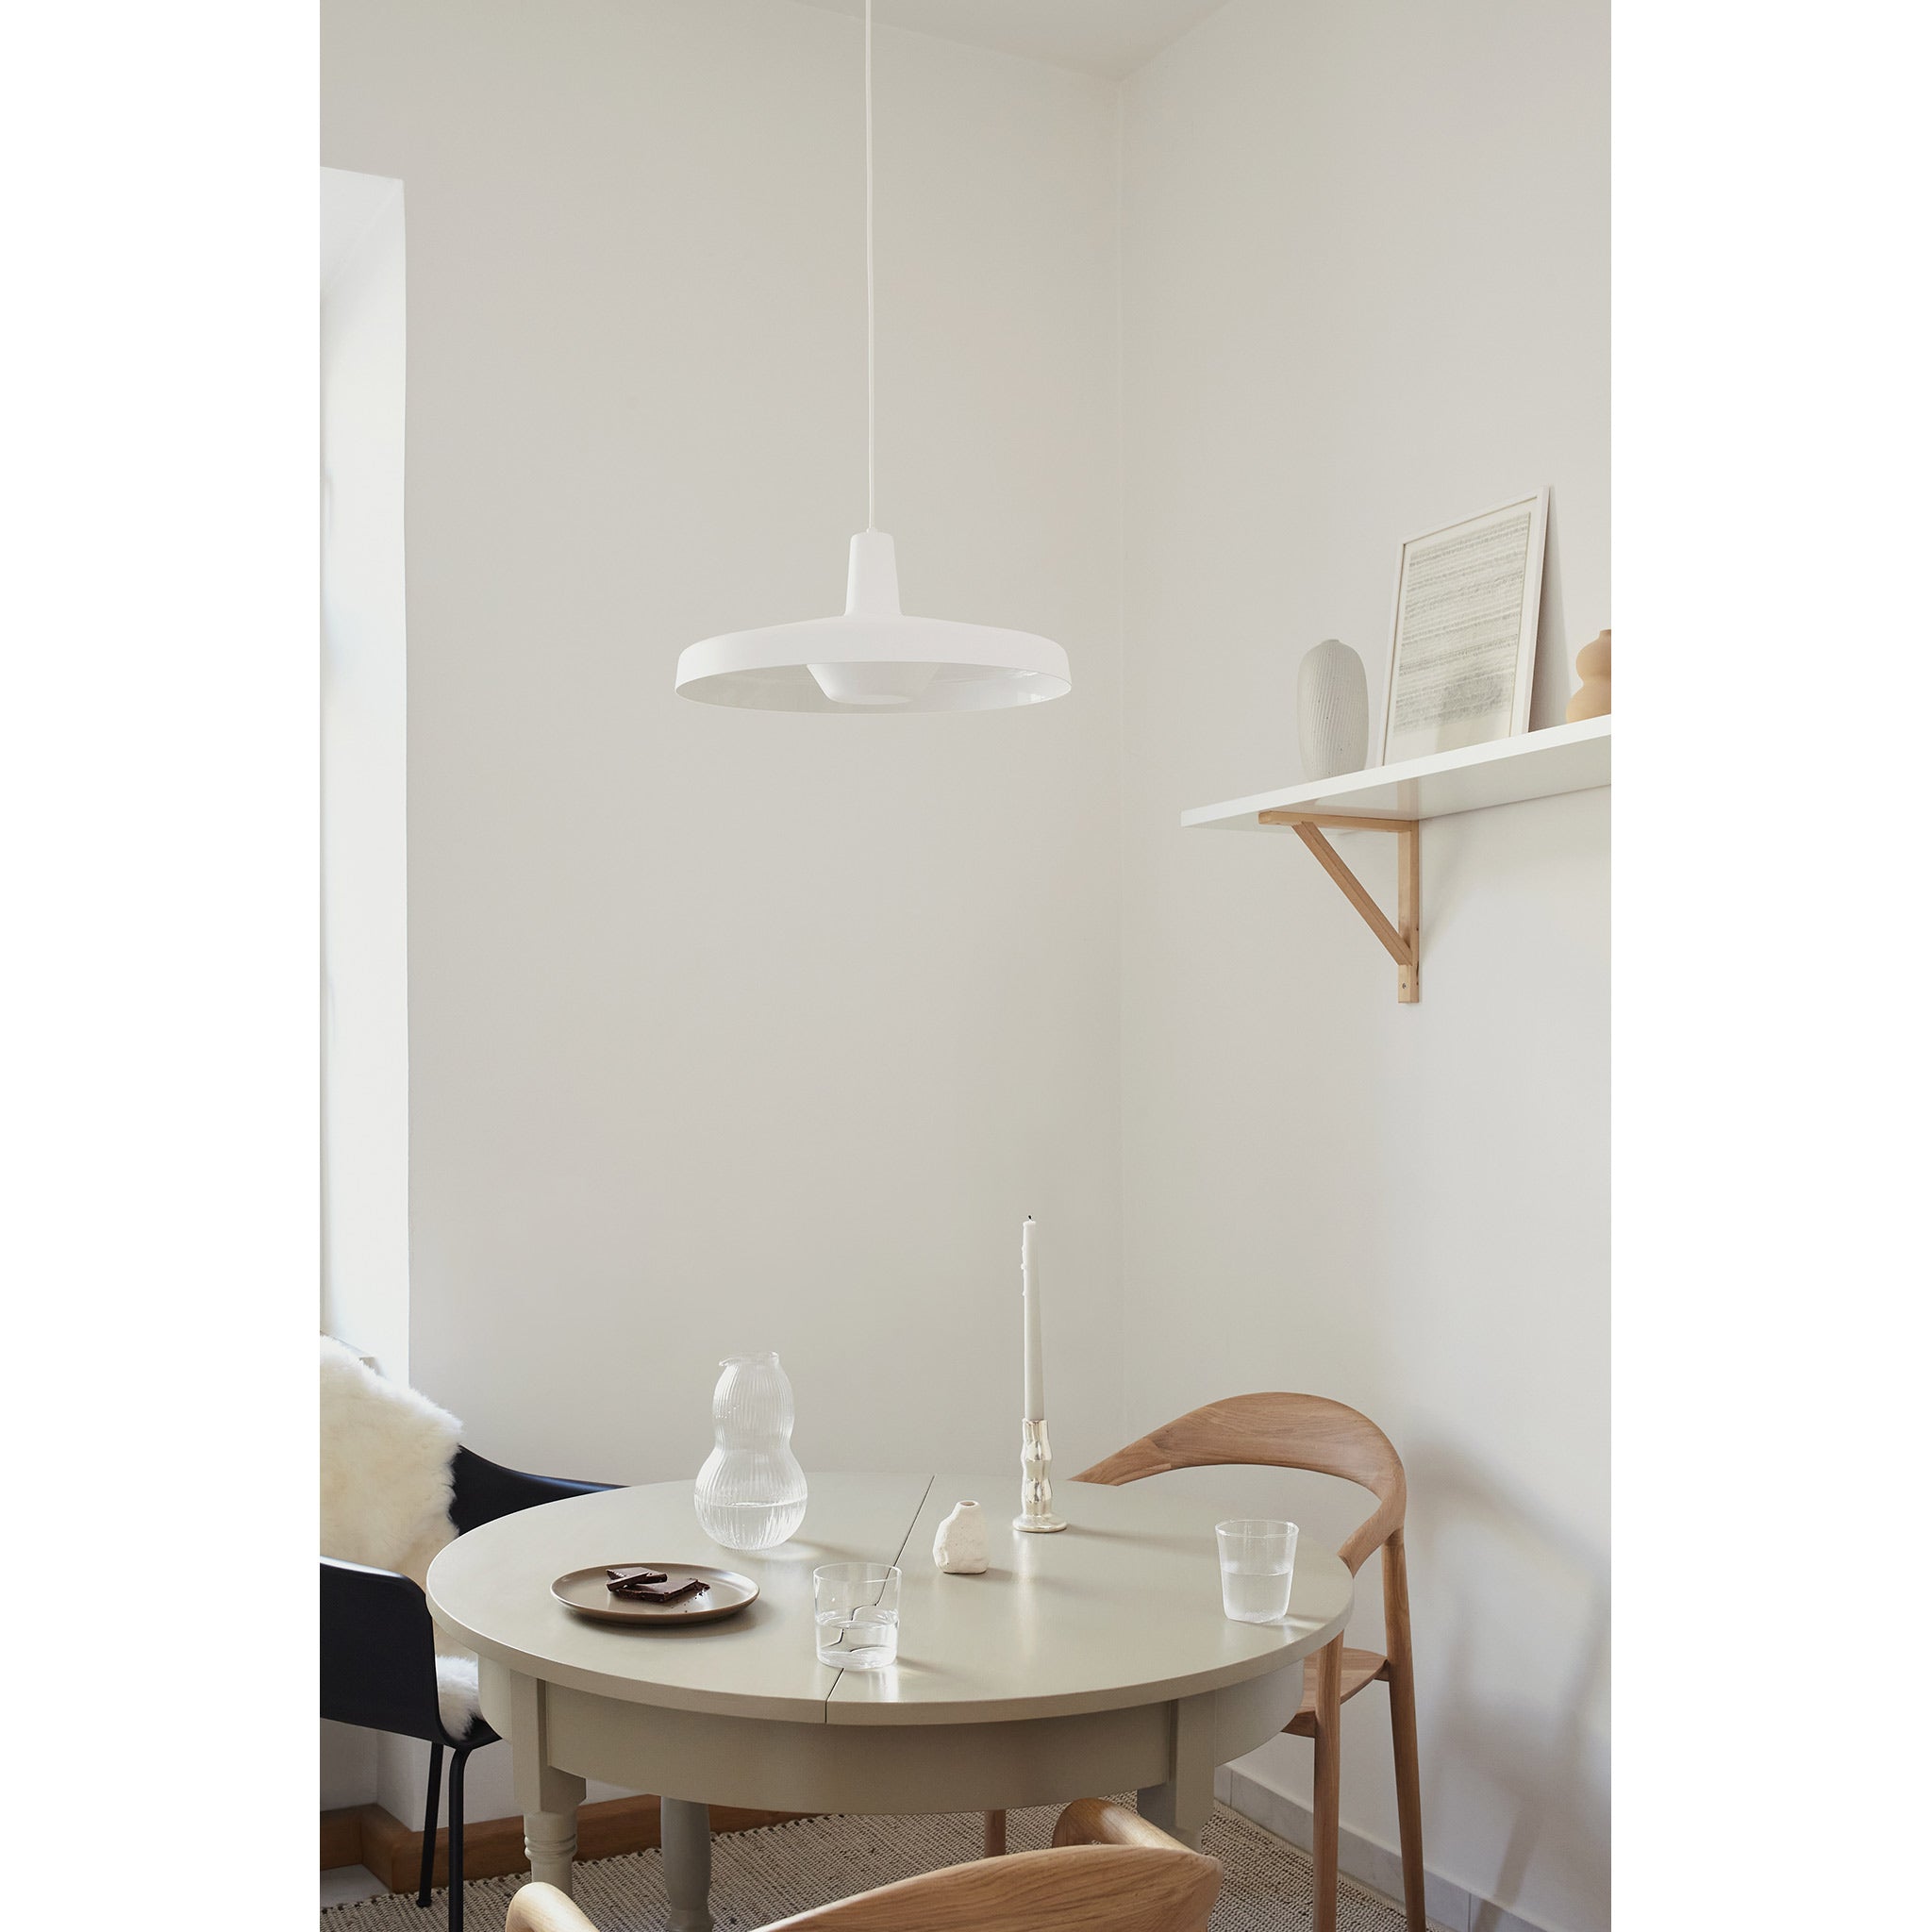 GRUPA hanging lamp | Arigato